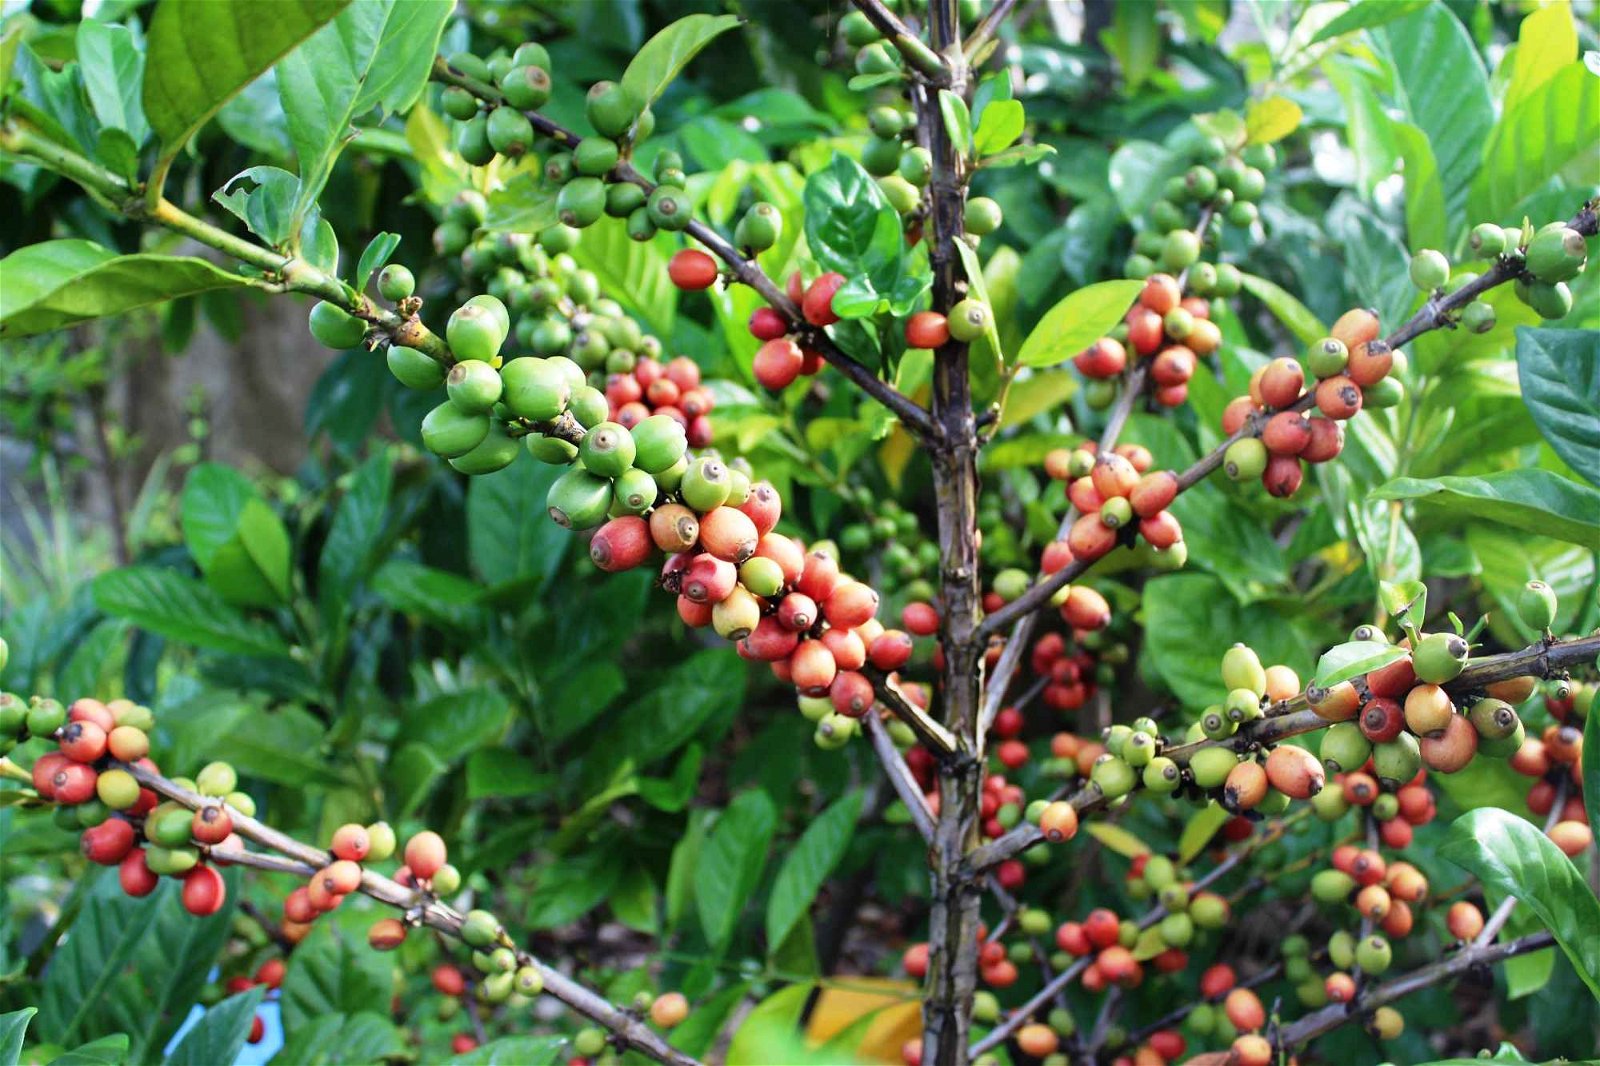 咖啡果皆长在树干上，其中青绿色为尚未熟透的咖啡果，鲜红色的则是熟果，两者混杂。